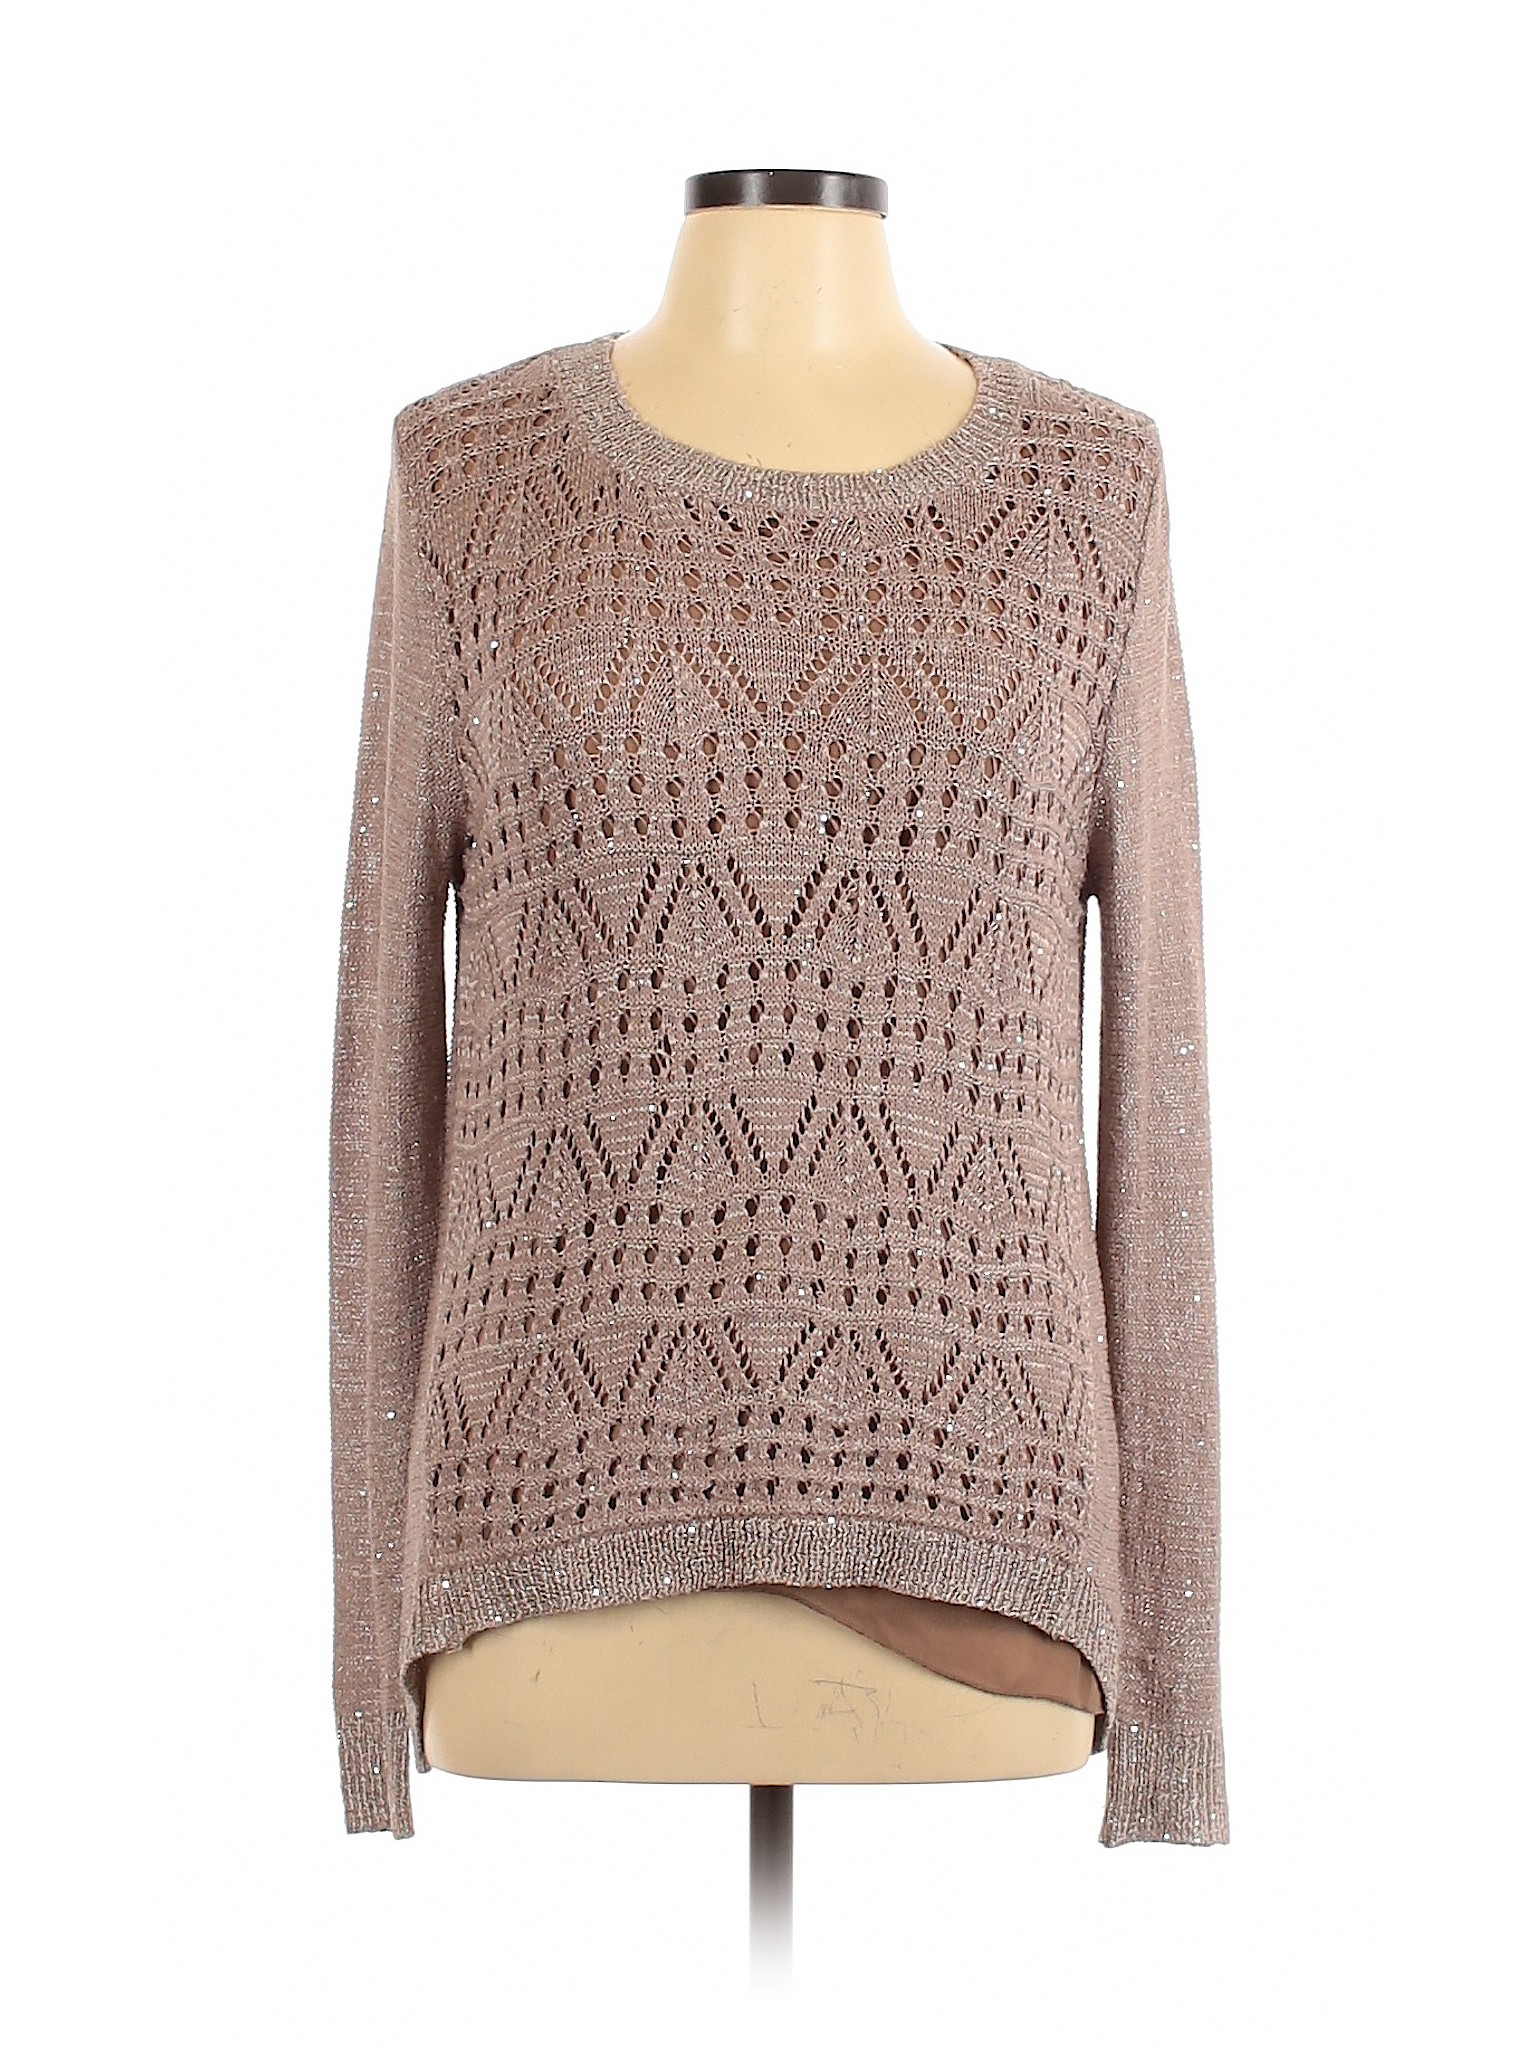 Sioni Women Brown Pullover Sweater L | eBay